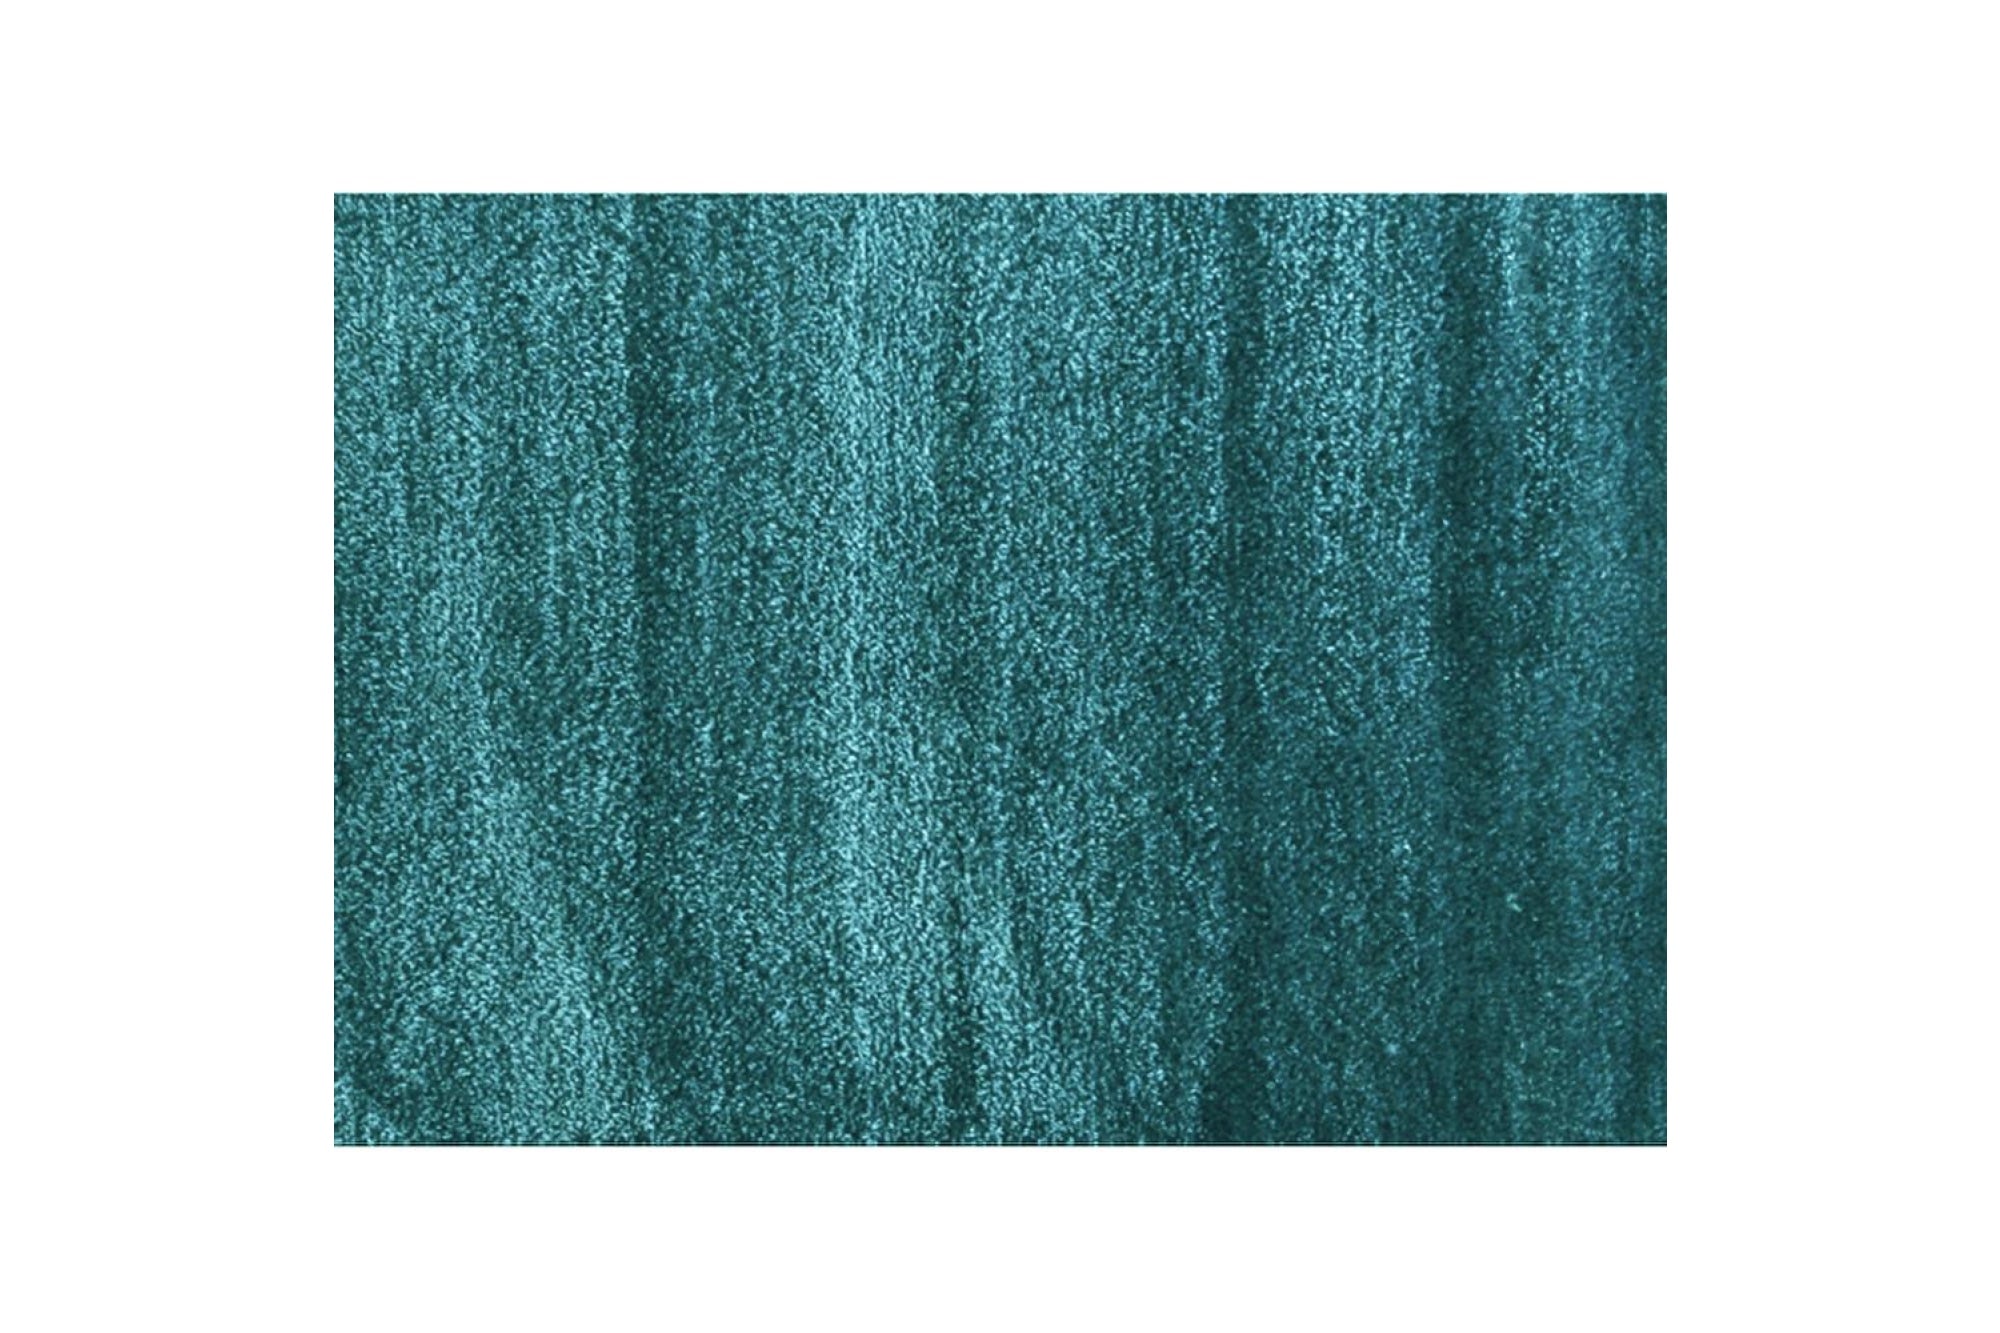 ARUNA kék polyester szőnyeg 170x240cm